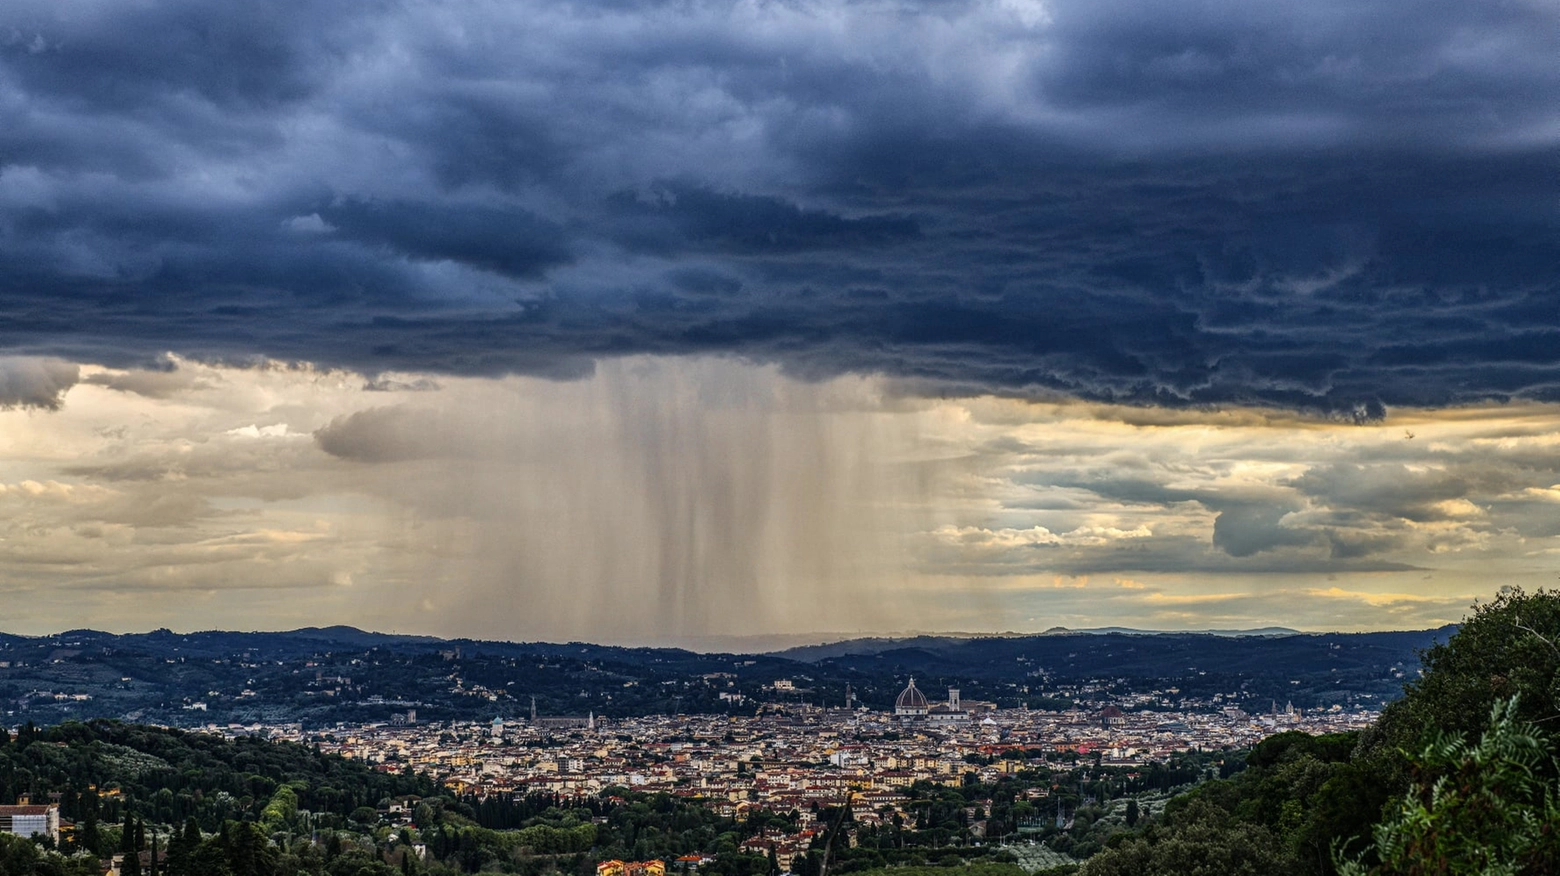 La nuvola di pioggia sul centro di Firenze (Riccardo Germogli / Fotocronache Germogli)